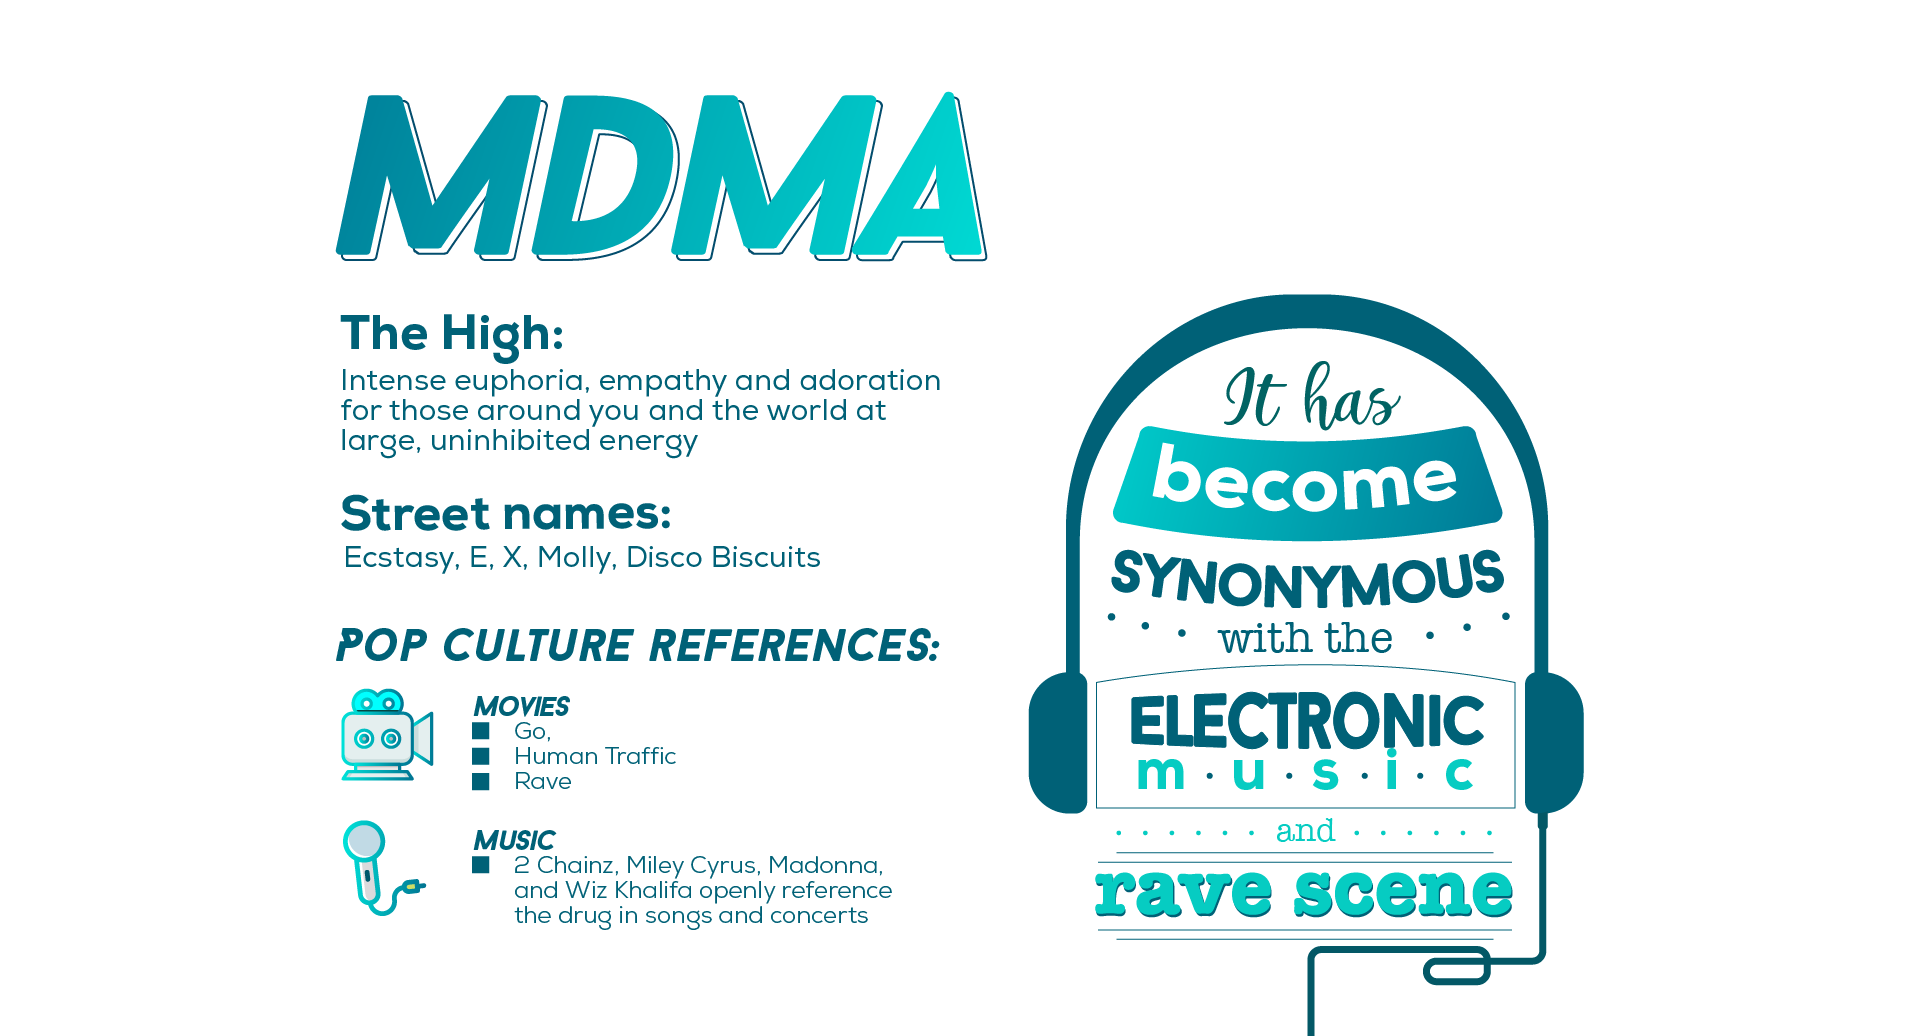 MDMA in Popular Culture